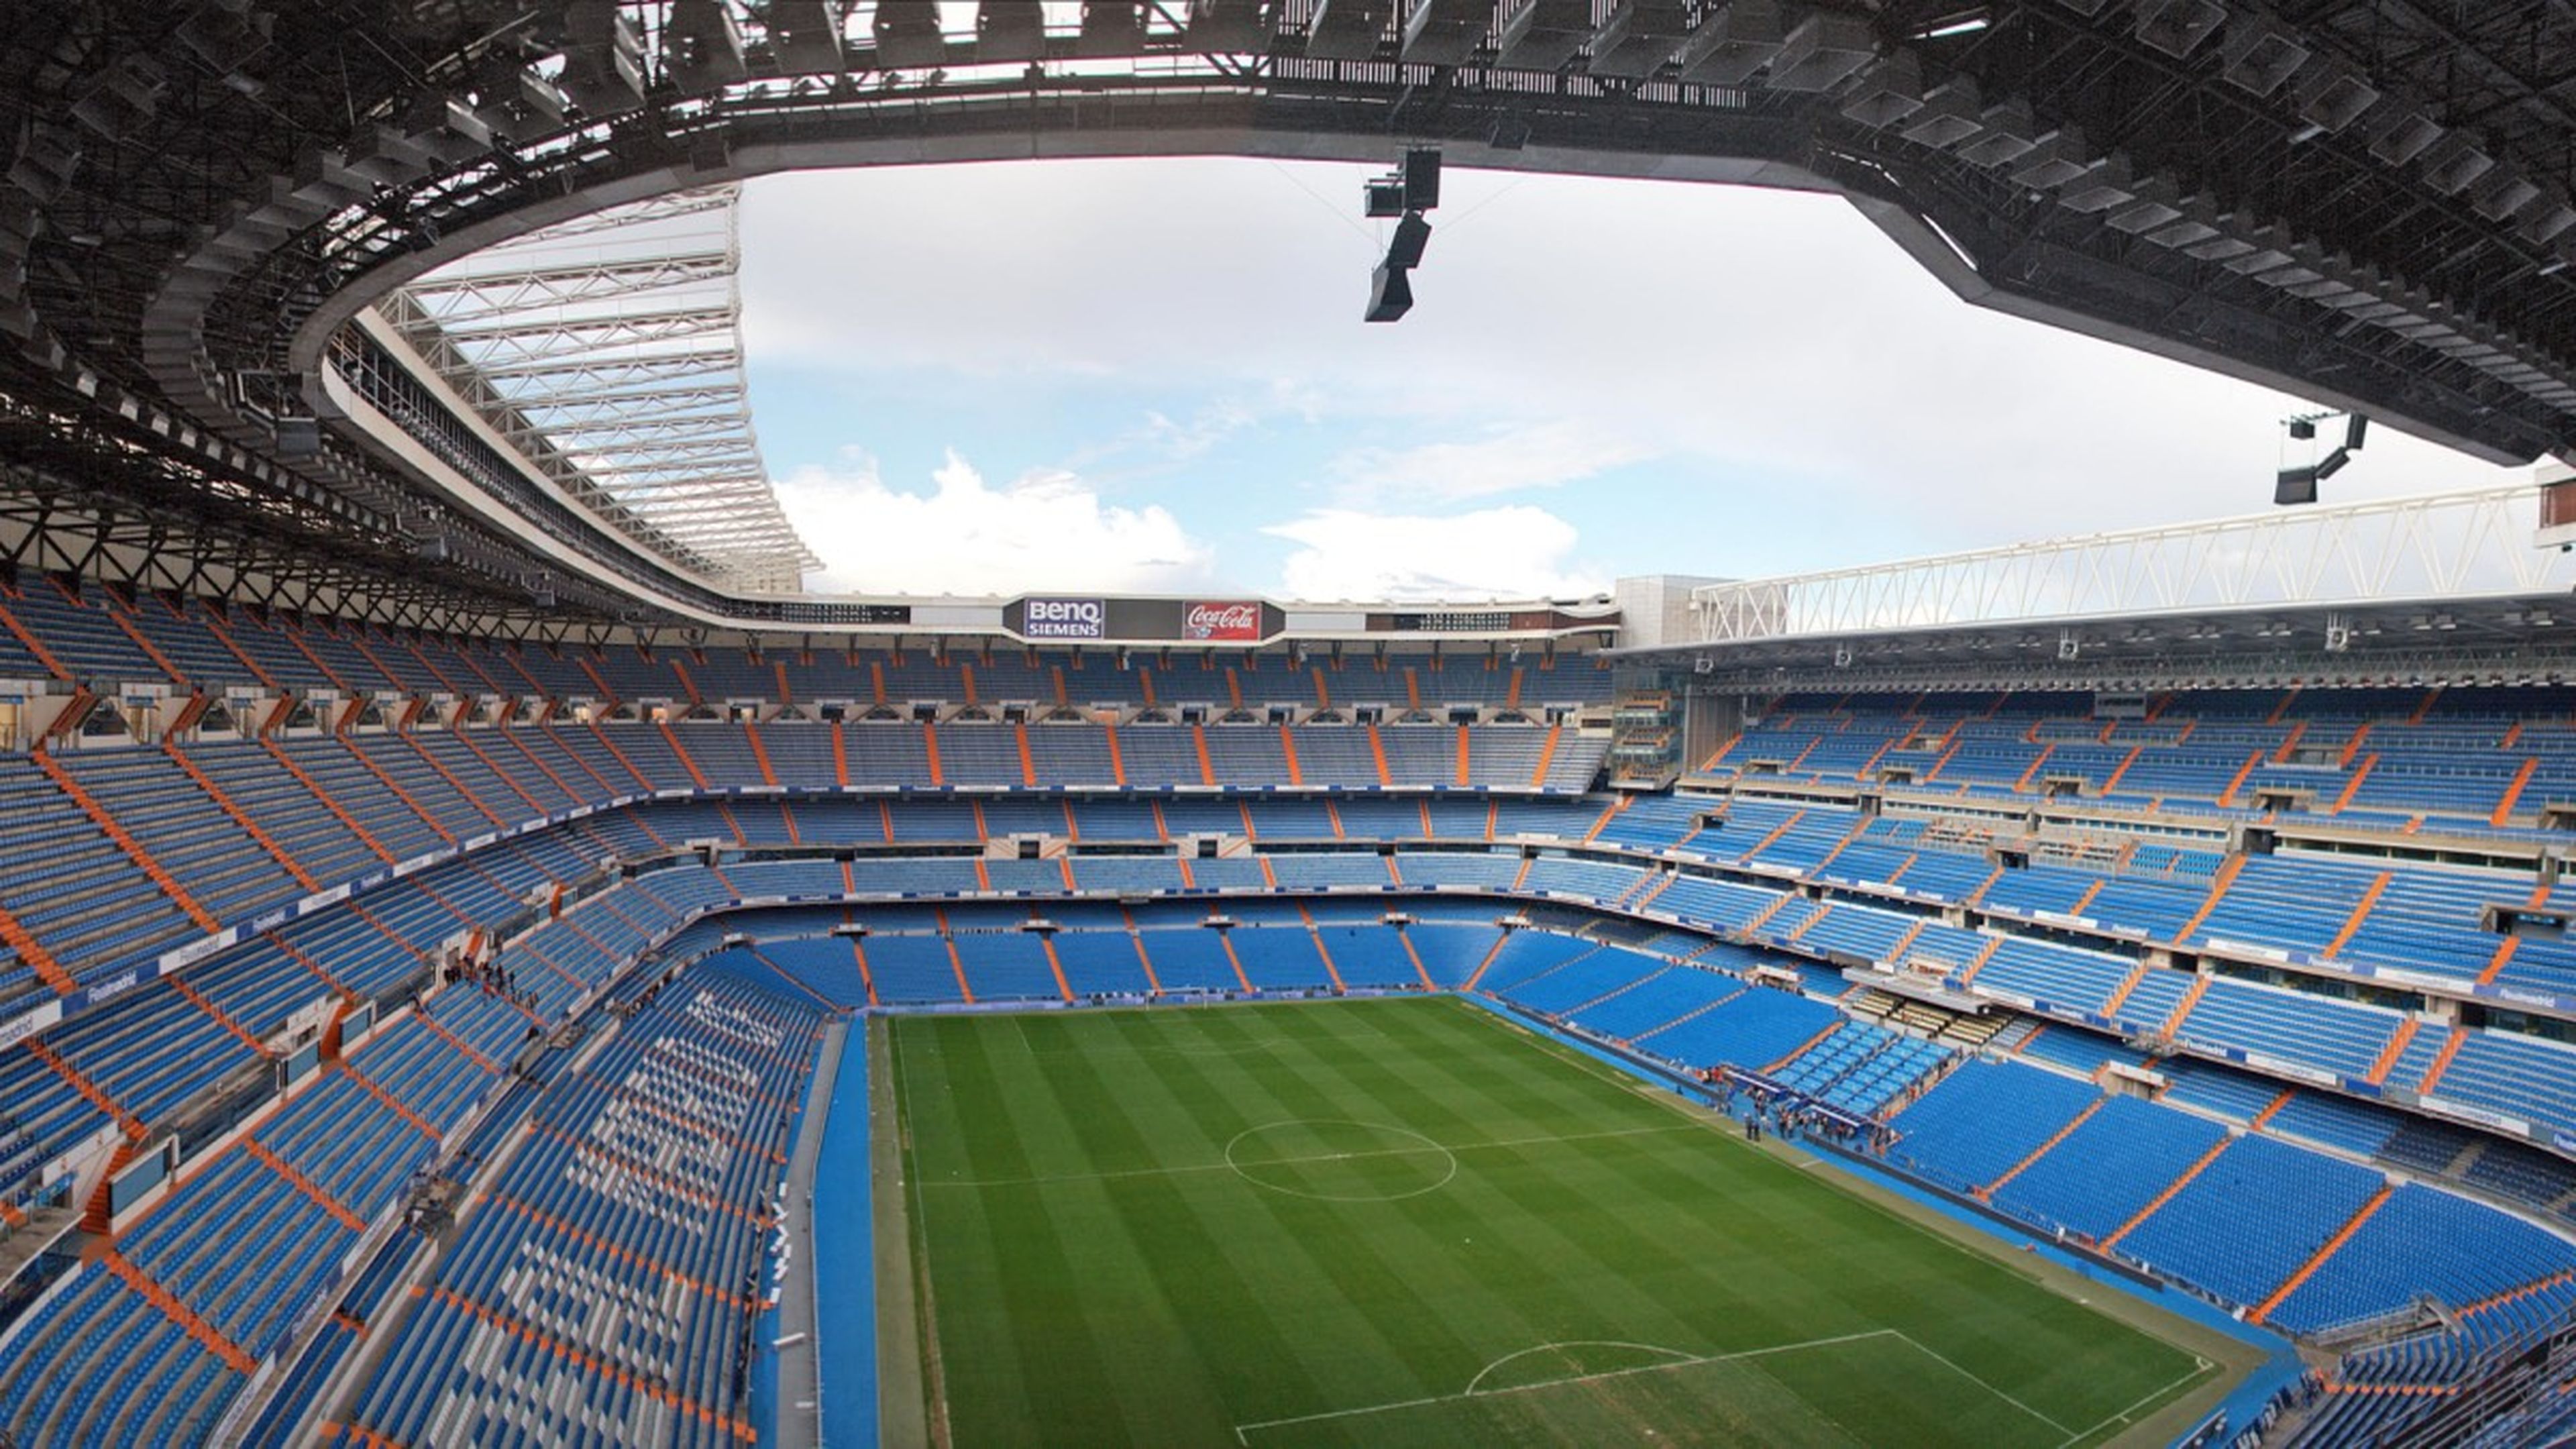 El Santiago Bernabéu será reformado casi al completo próximamente